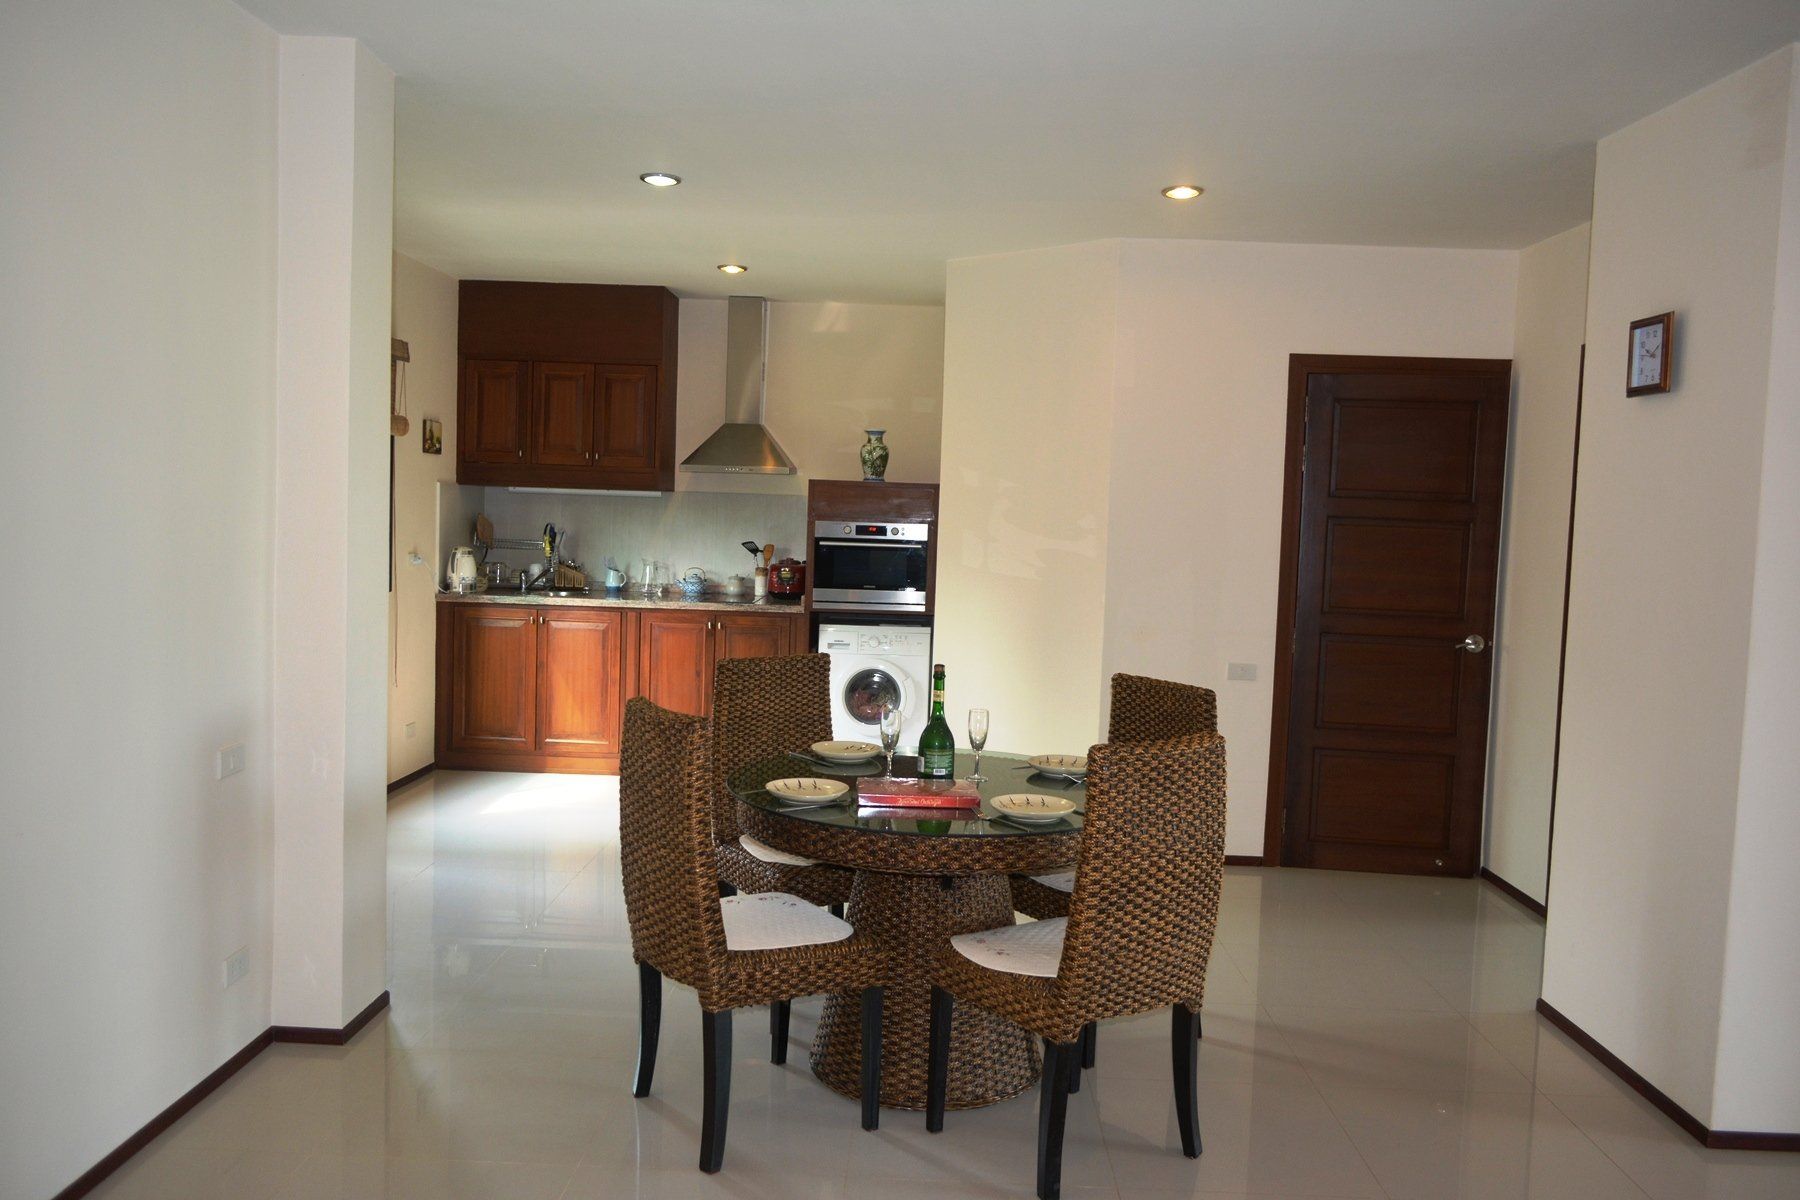 Two-bedroom apartment in Avanta Estates condominium for sale